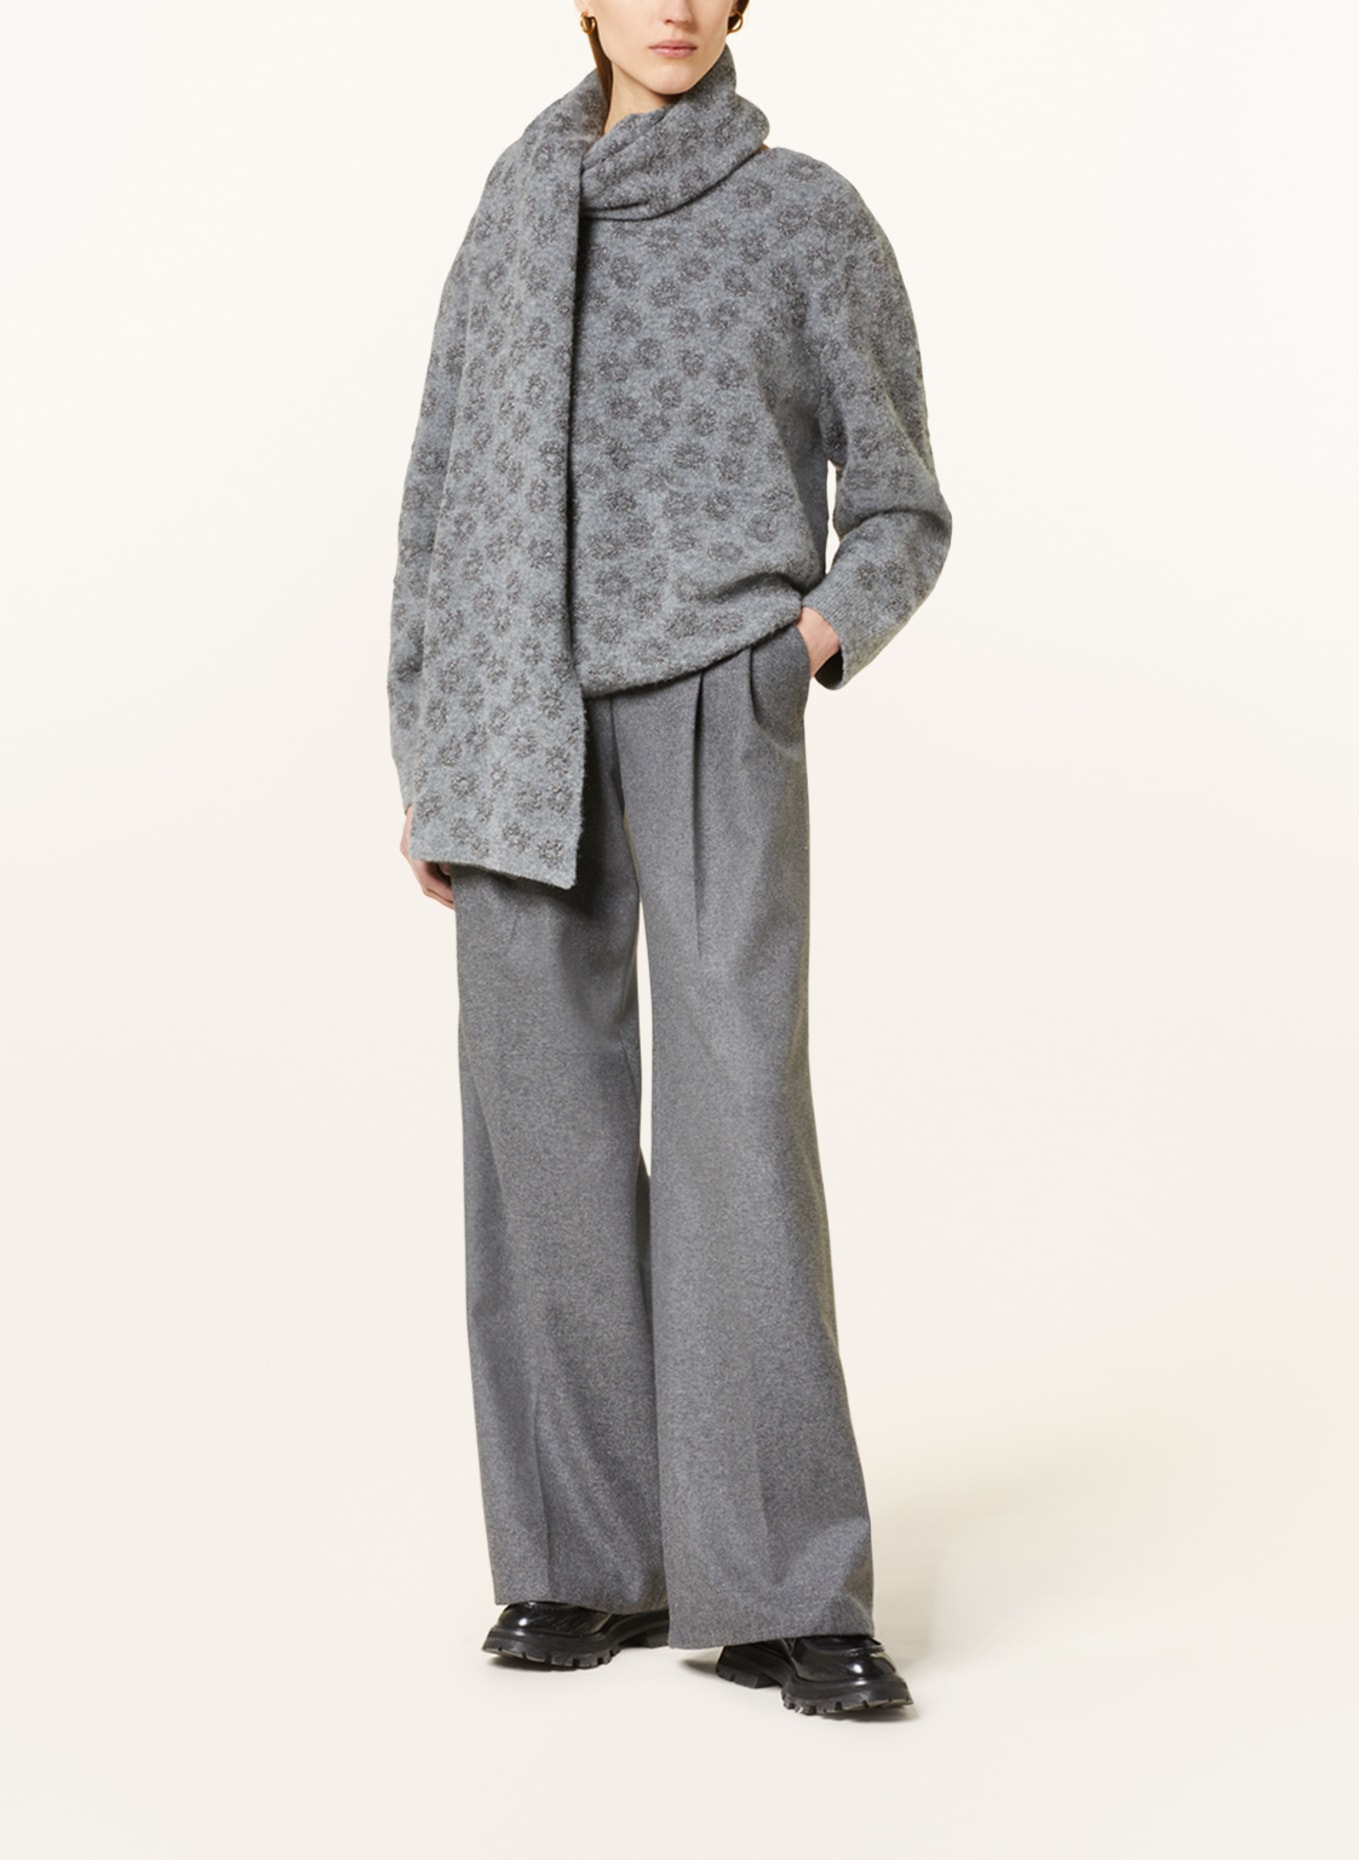 DOROTHEE SCHUMACHER Pullover mit Glitzergarn, Farbe: GRAU/ SILBER (Bild 2)